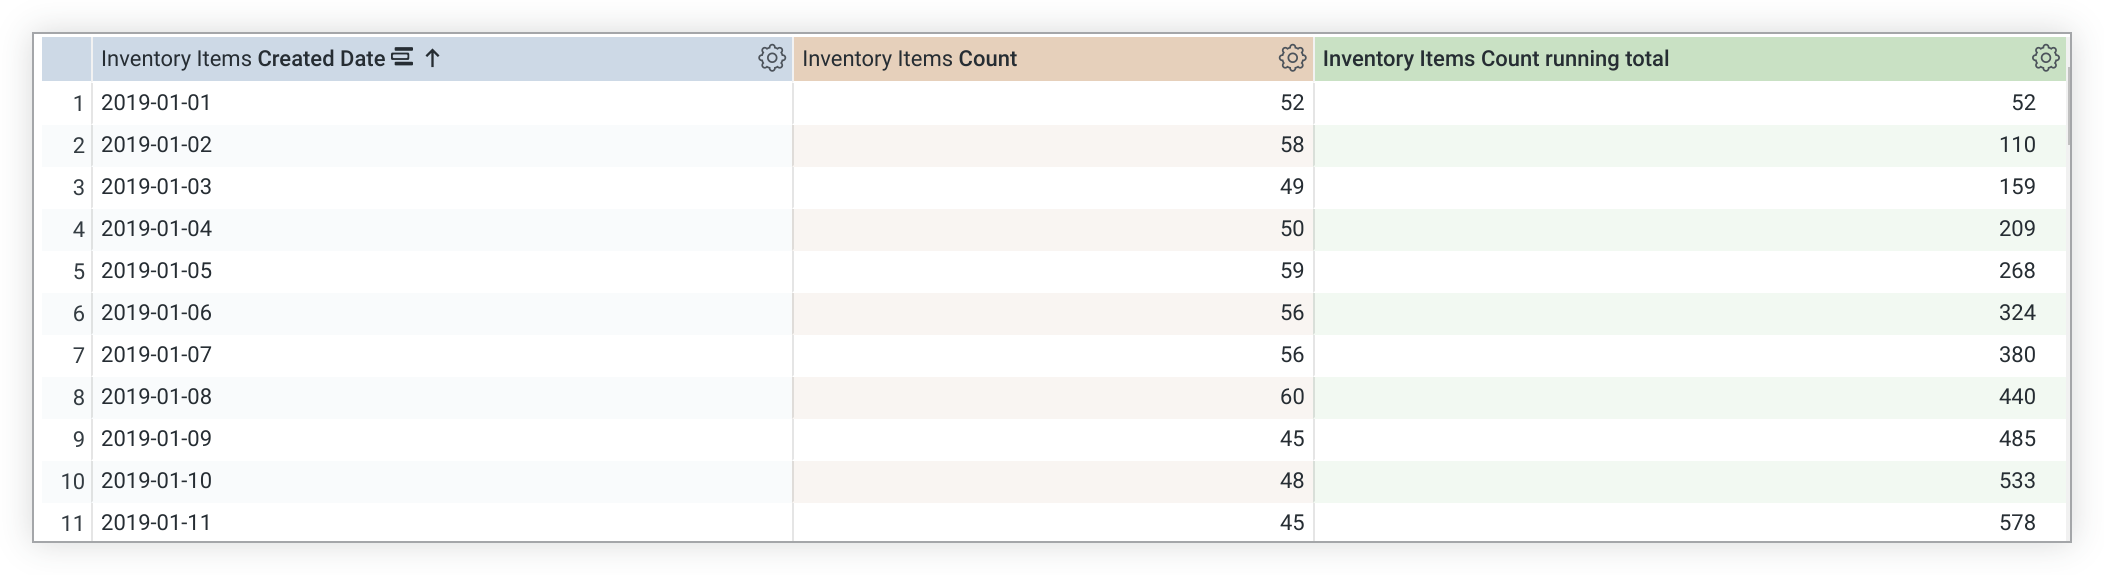 Tabella di dati Esplora che mostra una nuova colonna per il calcolo della tabella del conteggio totale degli elementi dell'inventario.